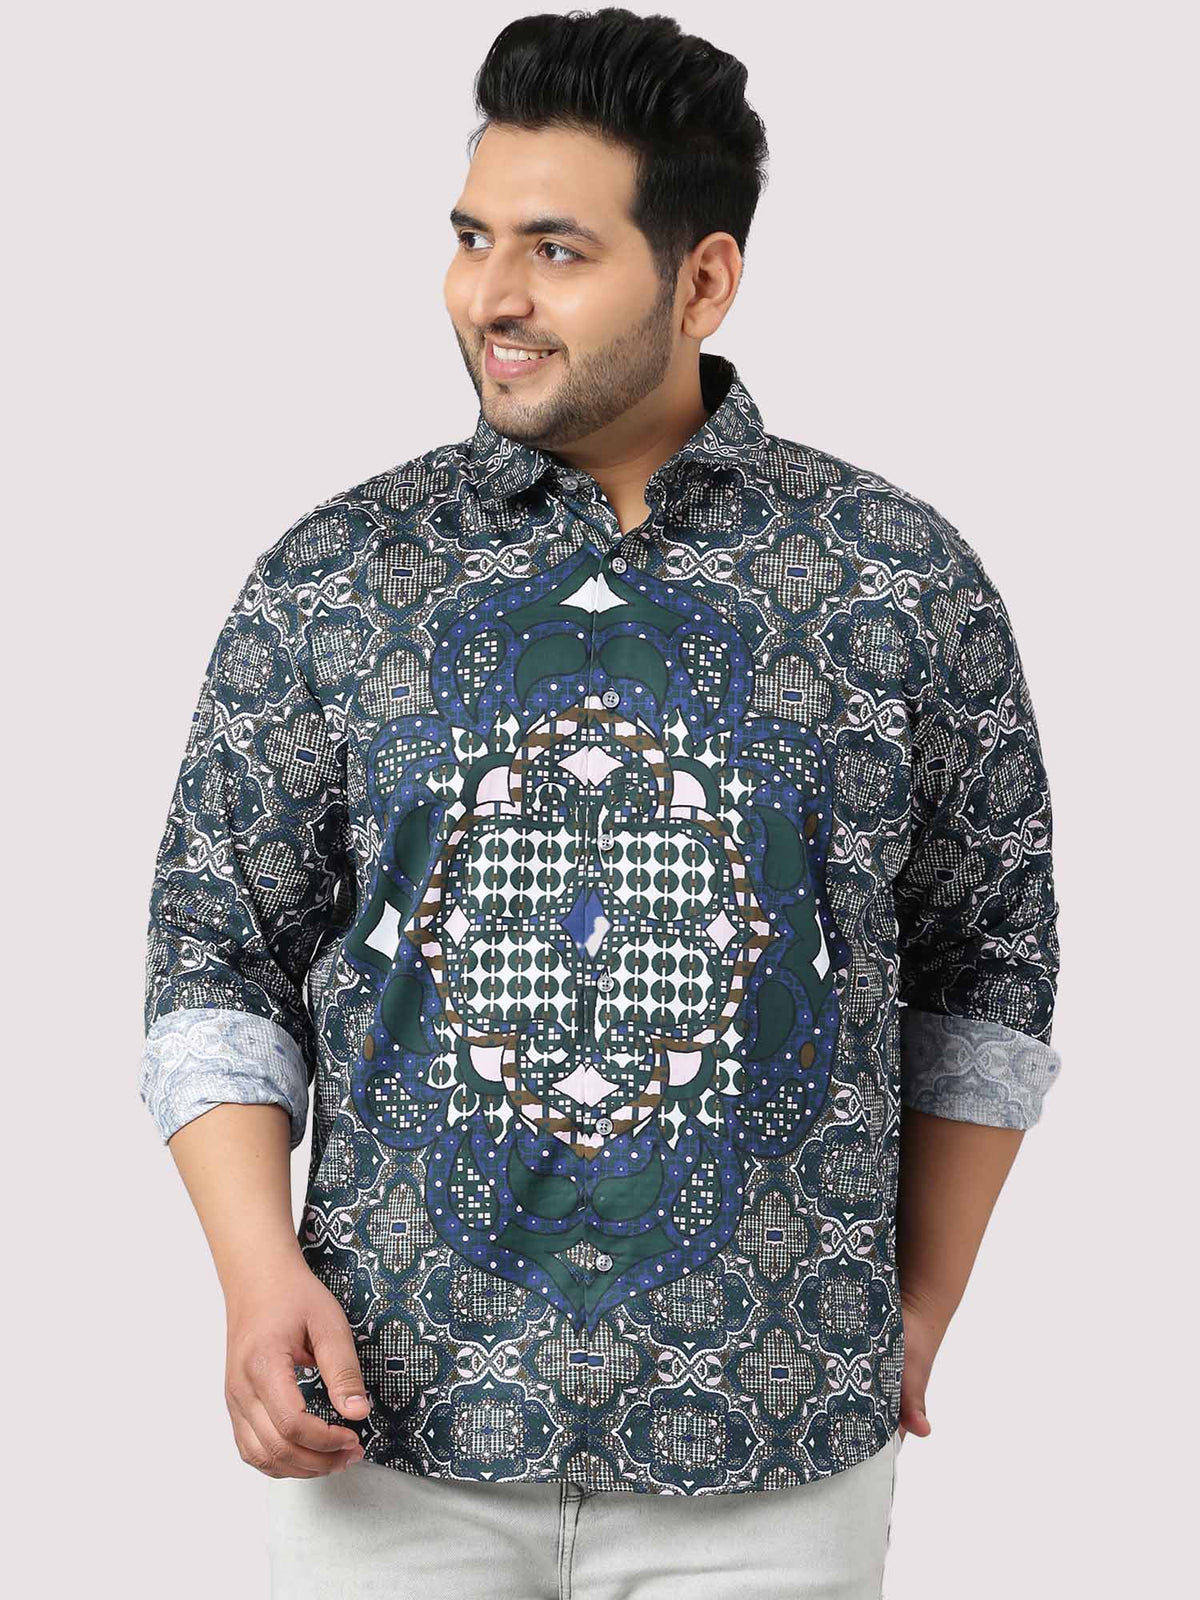 Modern Geometric Party Wear Shirts Men's Plus Size